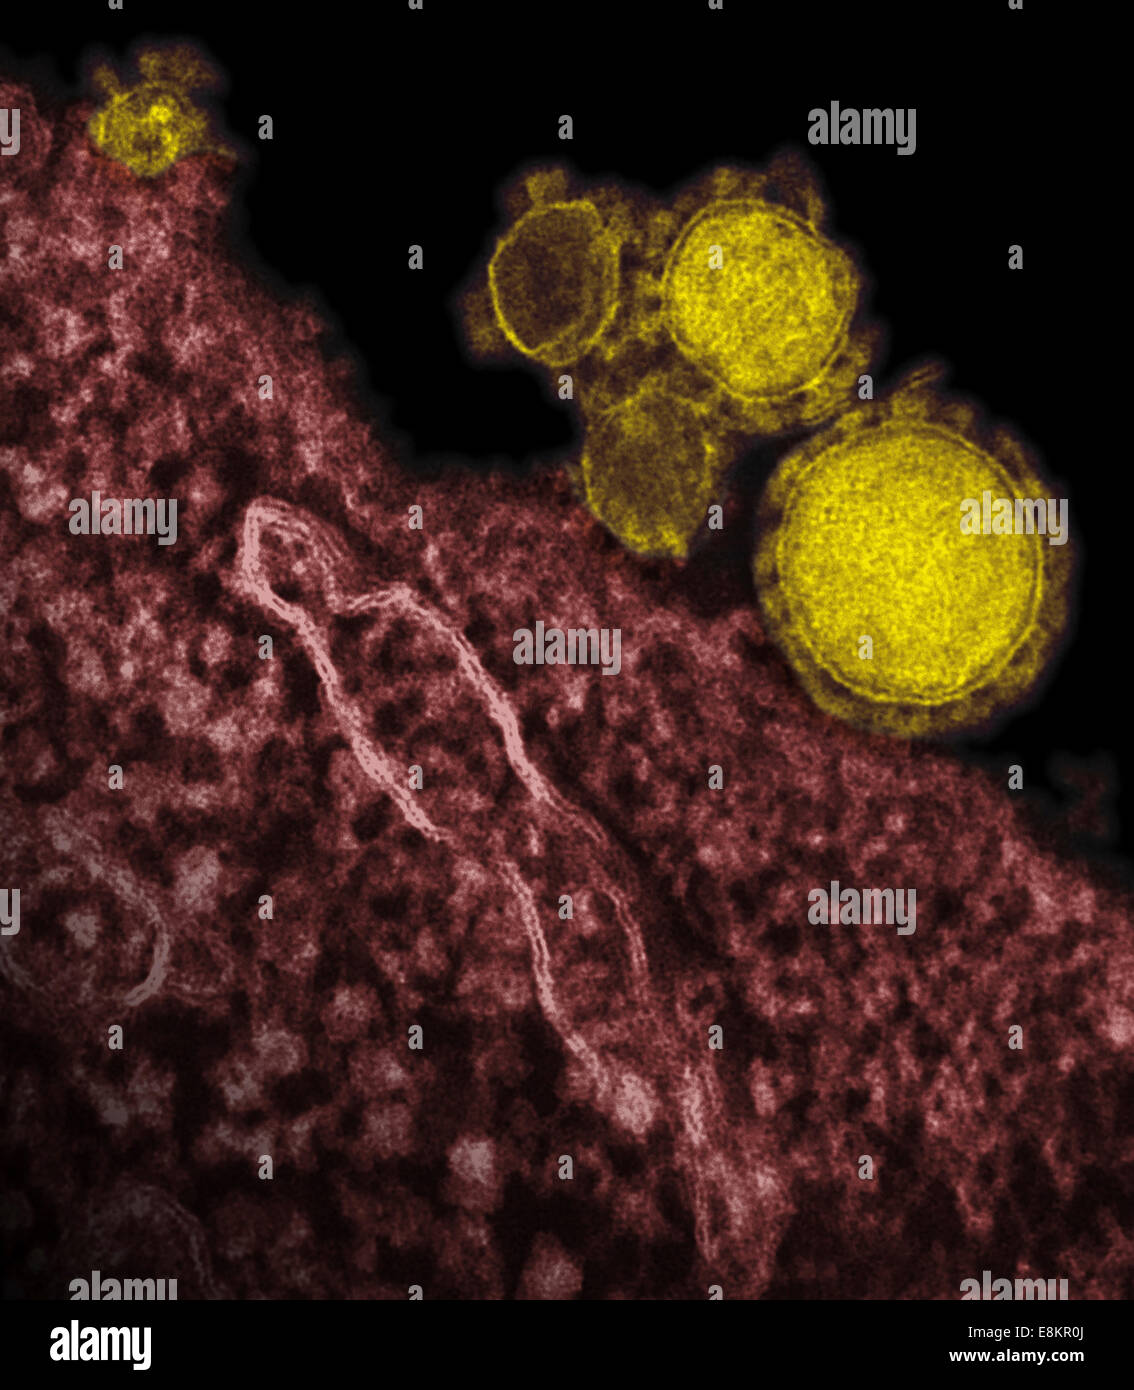 Colorizzato micrografia elettronica a trasmissione del Medio Oriente la sindrome respiratoria coronavirus particelle. Foto Stock